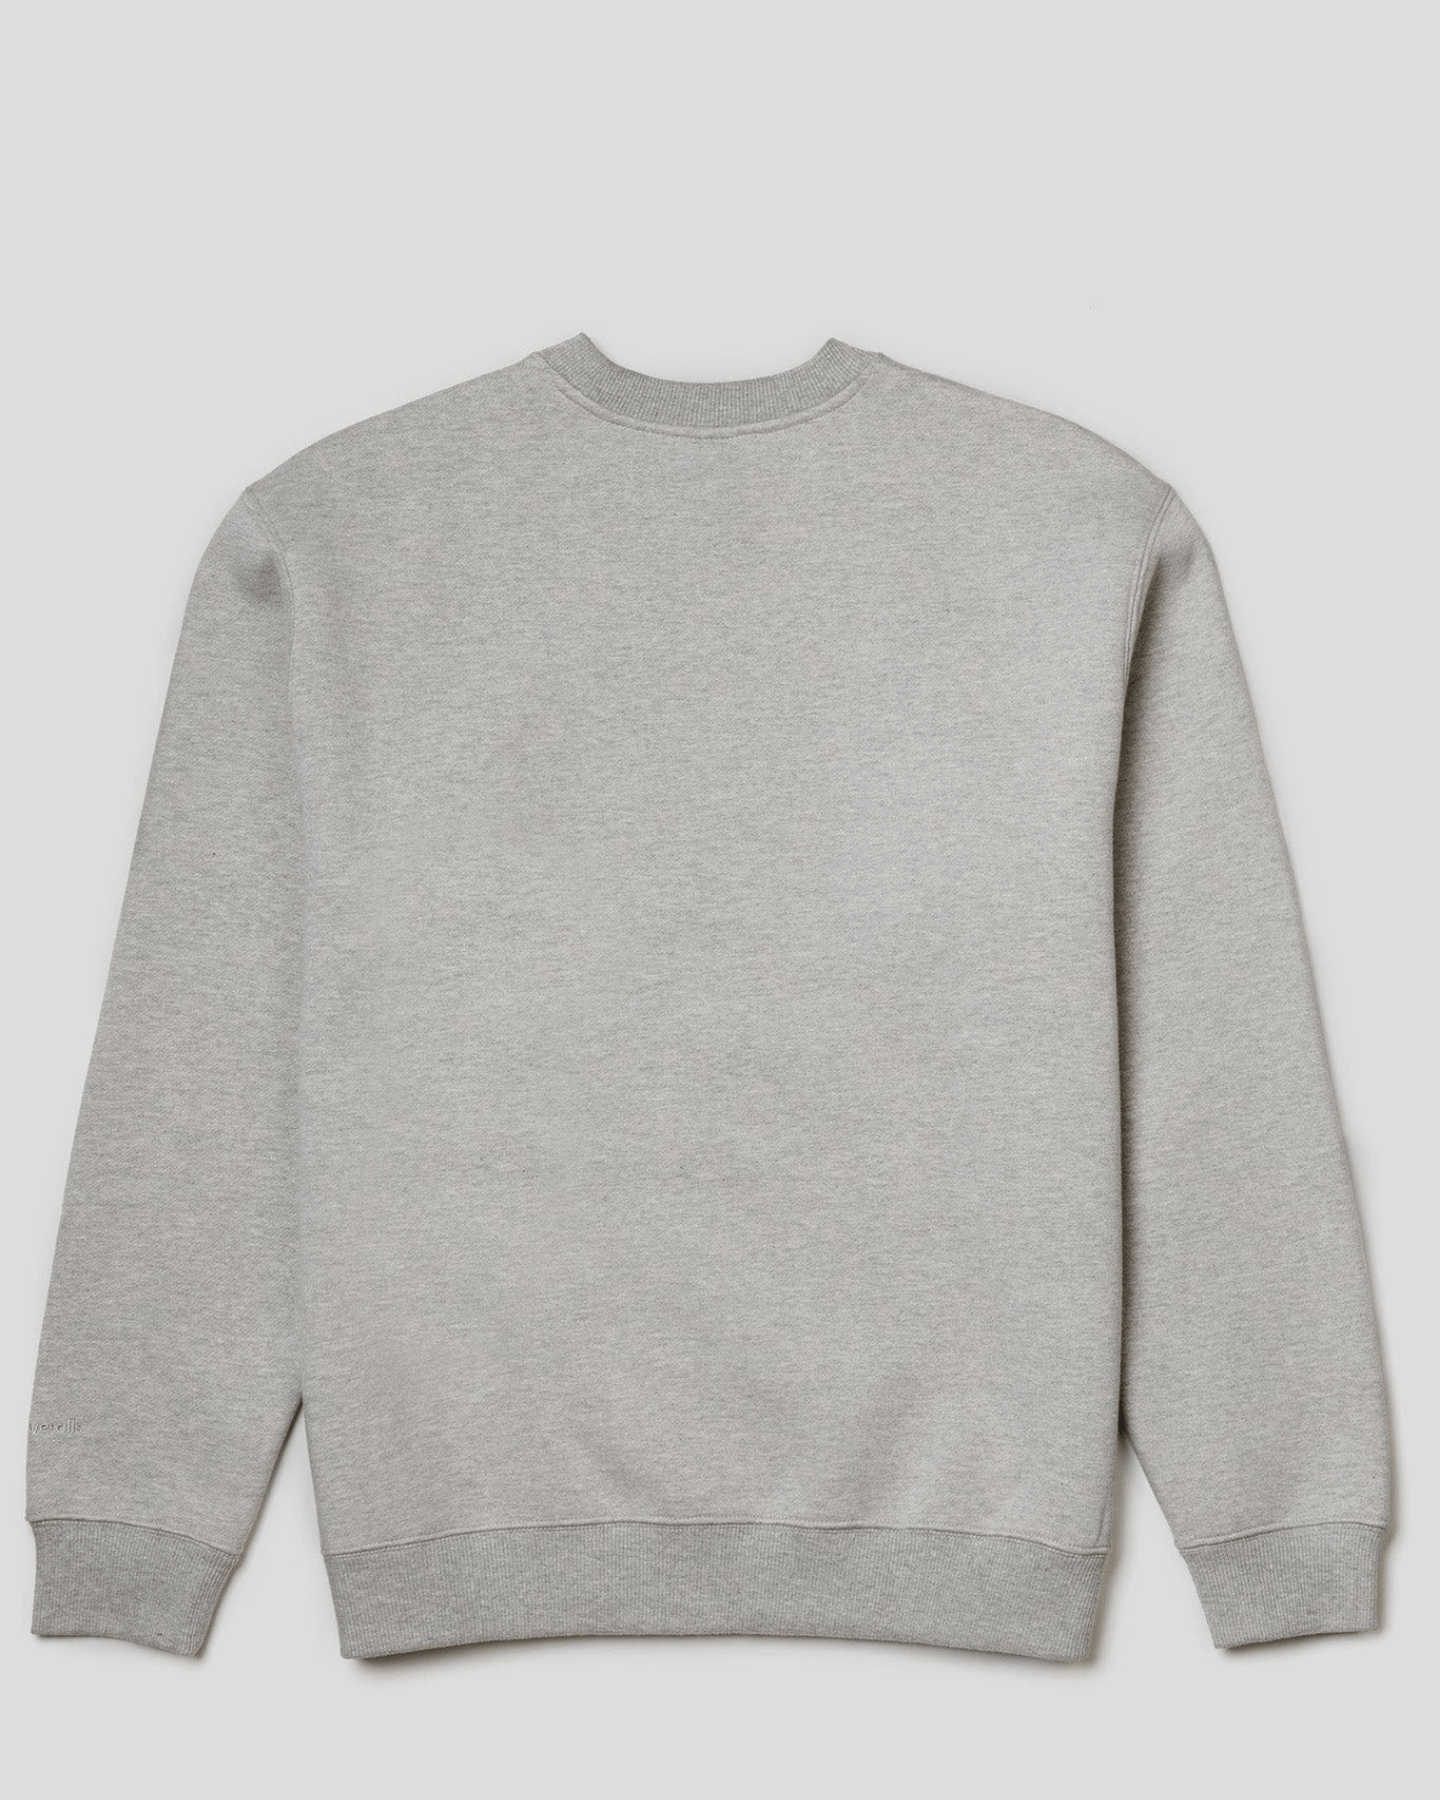 Come With Us Soho Sweatshirt Grey